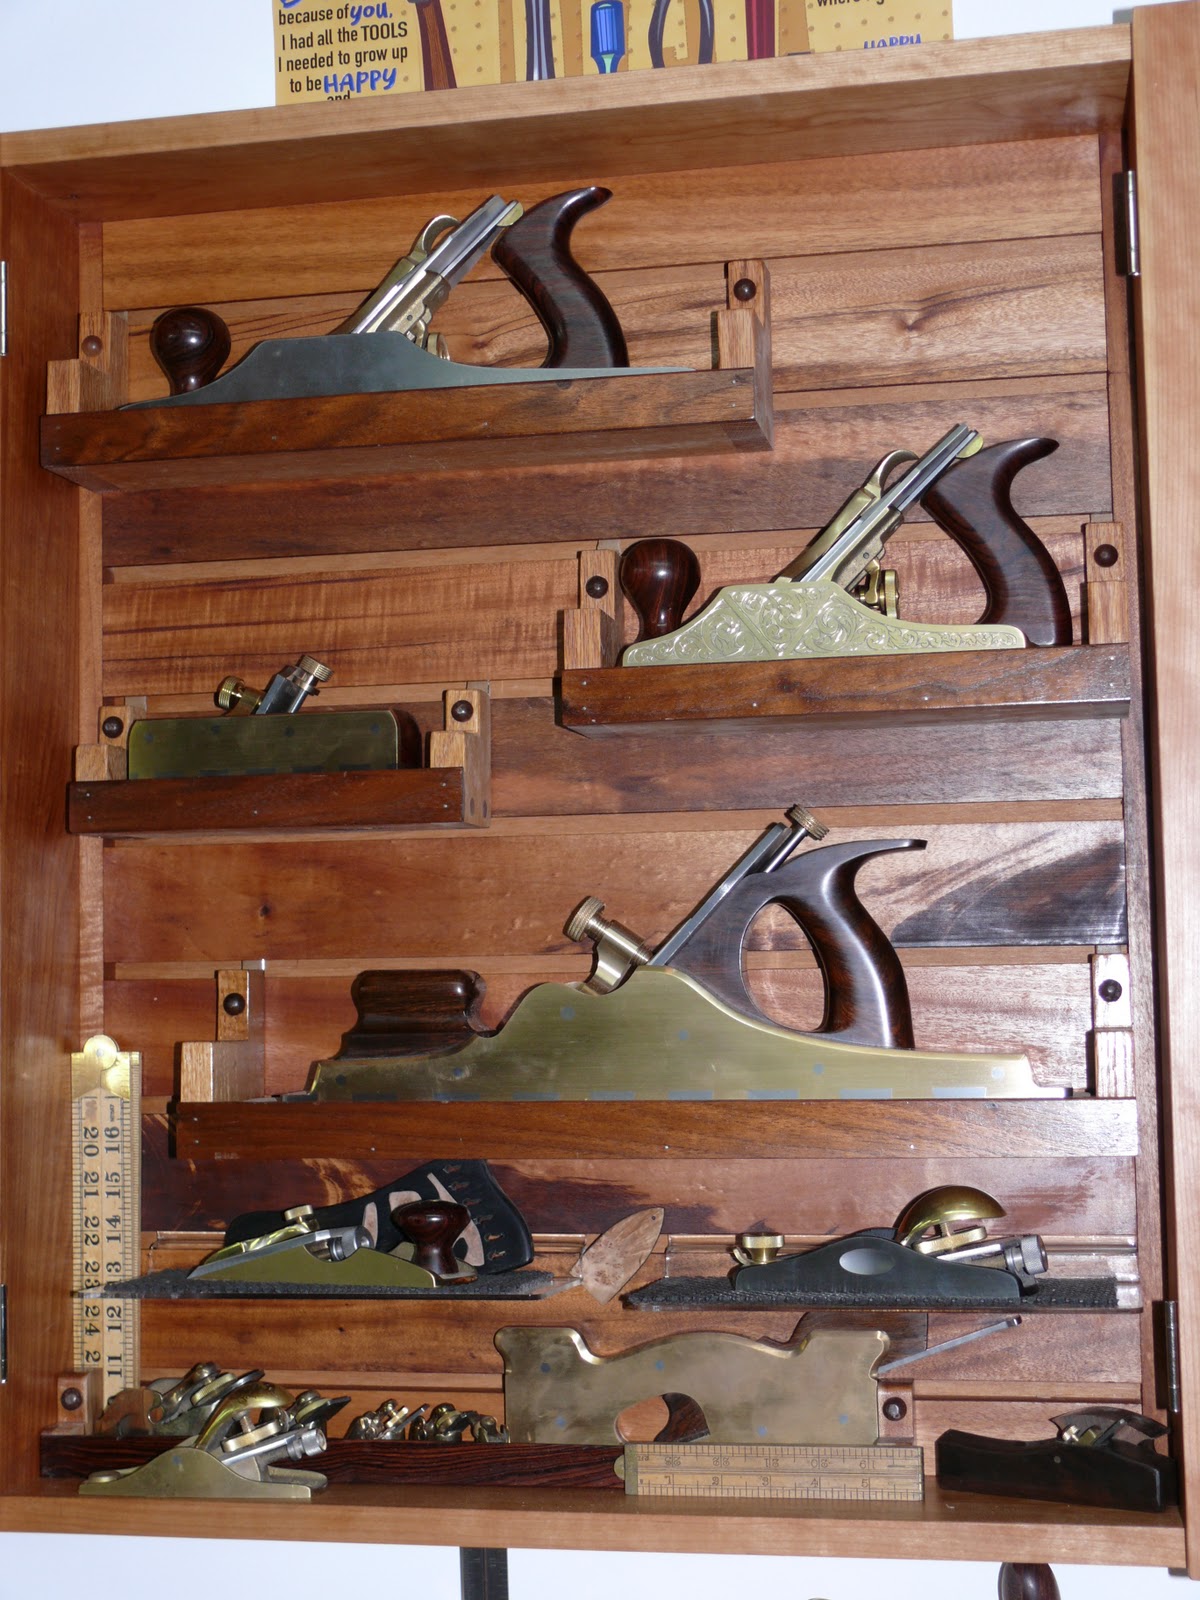 Rich's Woodcraft: Homemade slatwall an improvement over ...